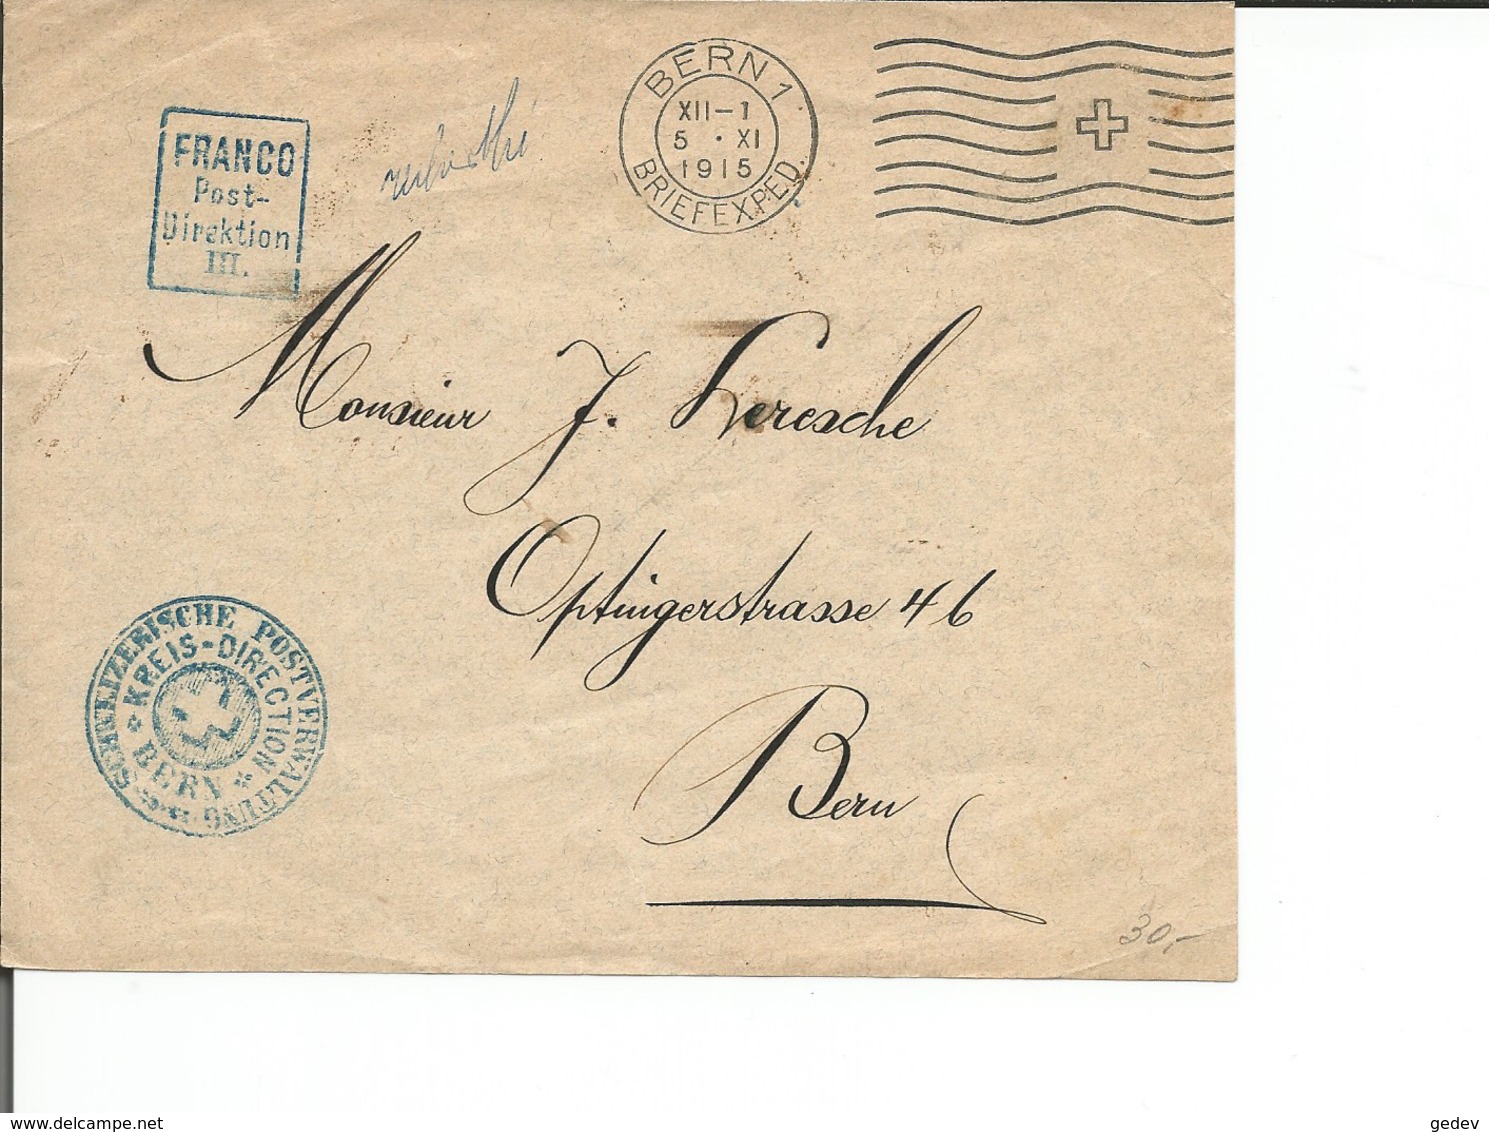 Devant D'enveloppe Suisse, Cachet Carré Bleu, FRANCO Post-Direktion III (5.11.1915) - Portomarken